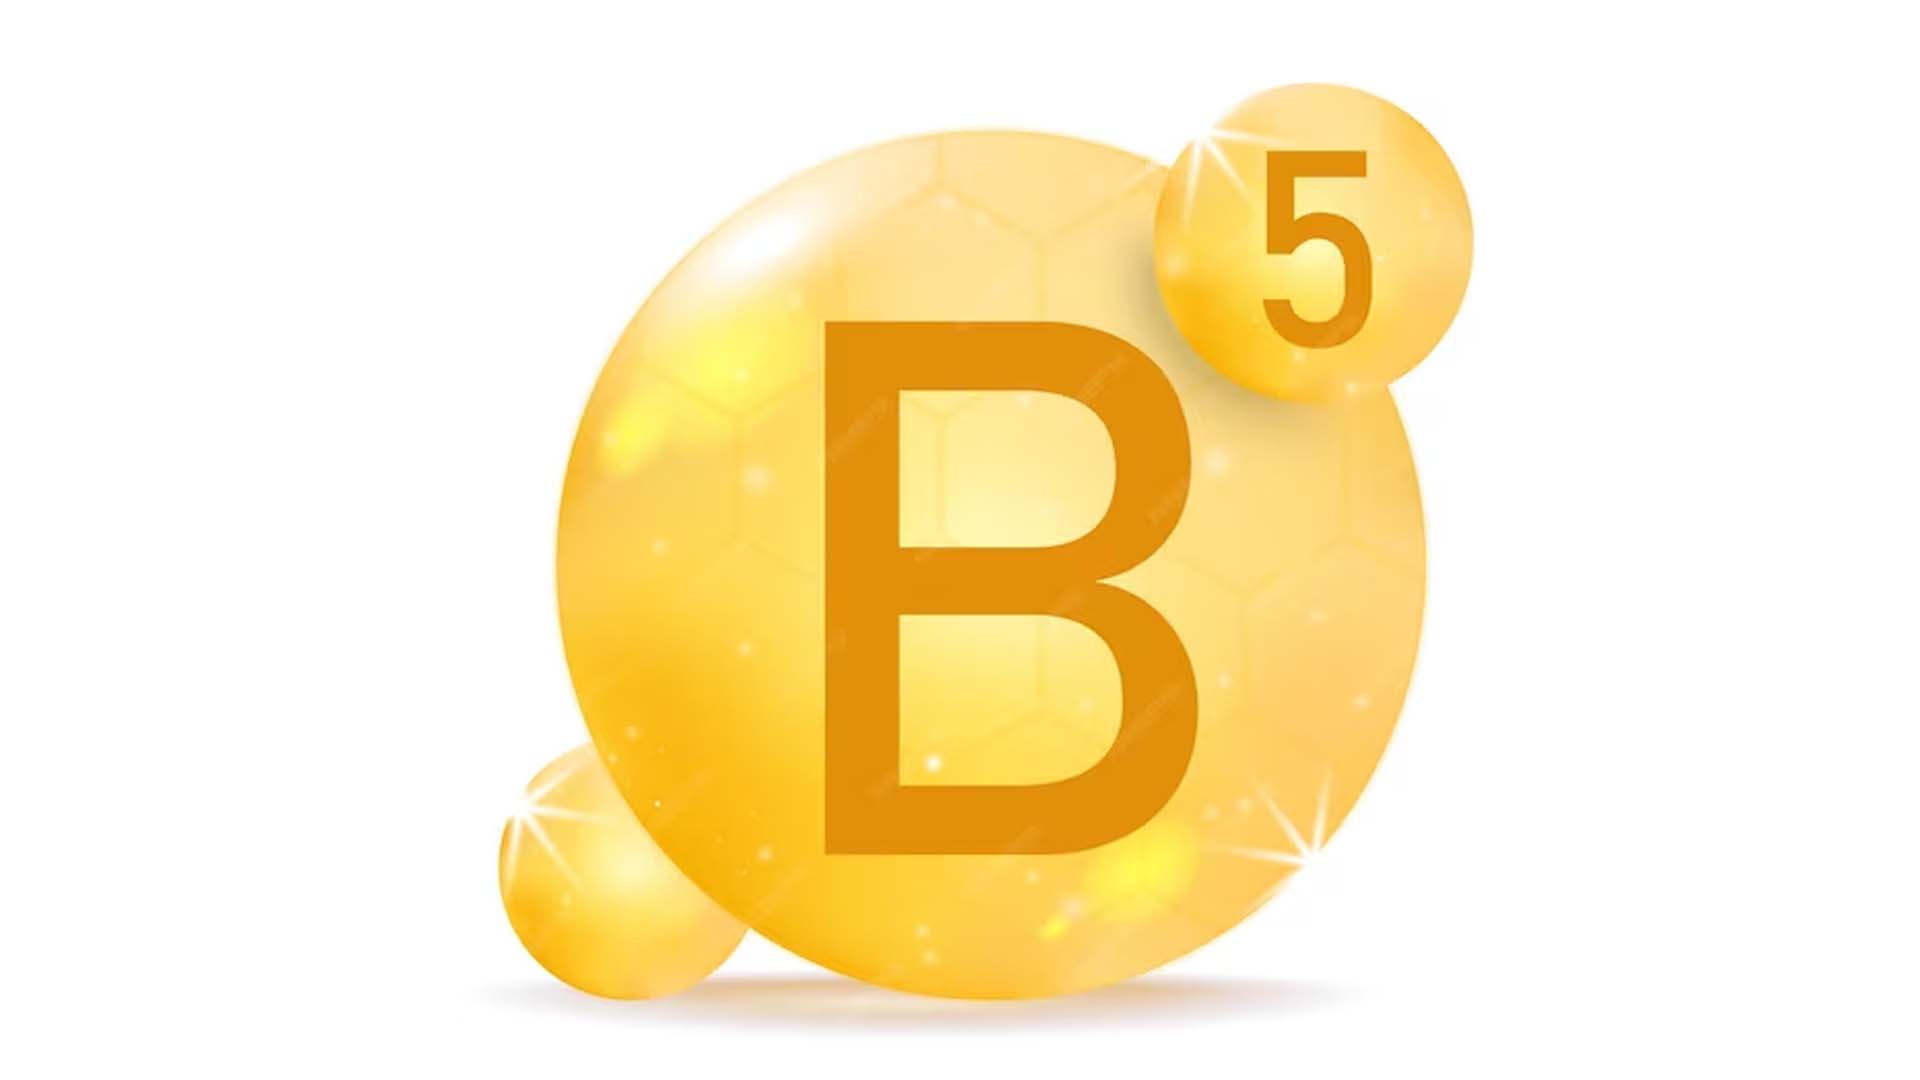 Vitamin B5 or Pantothenic acid